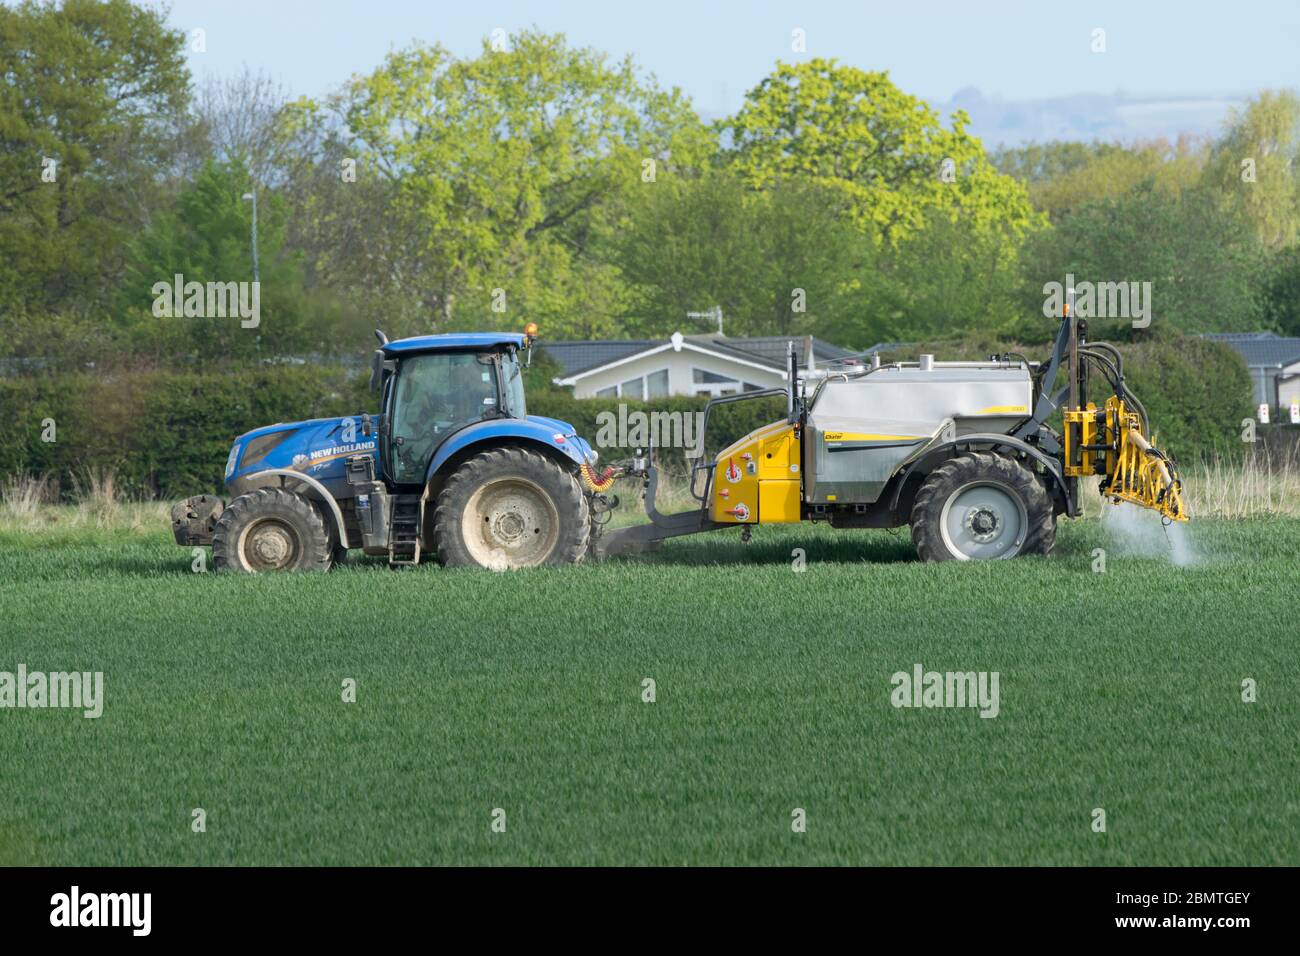 Tracteur en pulvérisation de récolte de colza. Hayling Island, Angleterre Banque D'Images